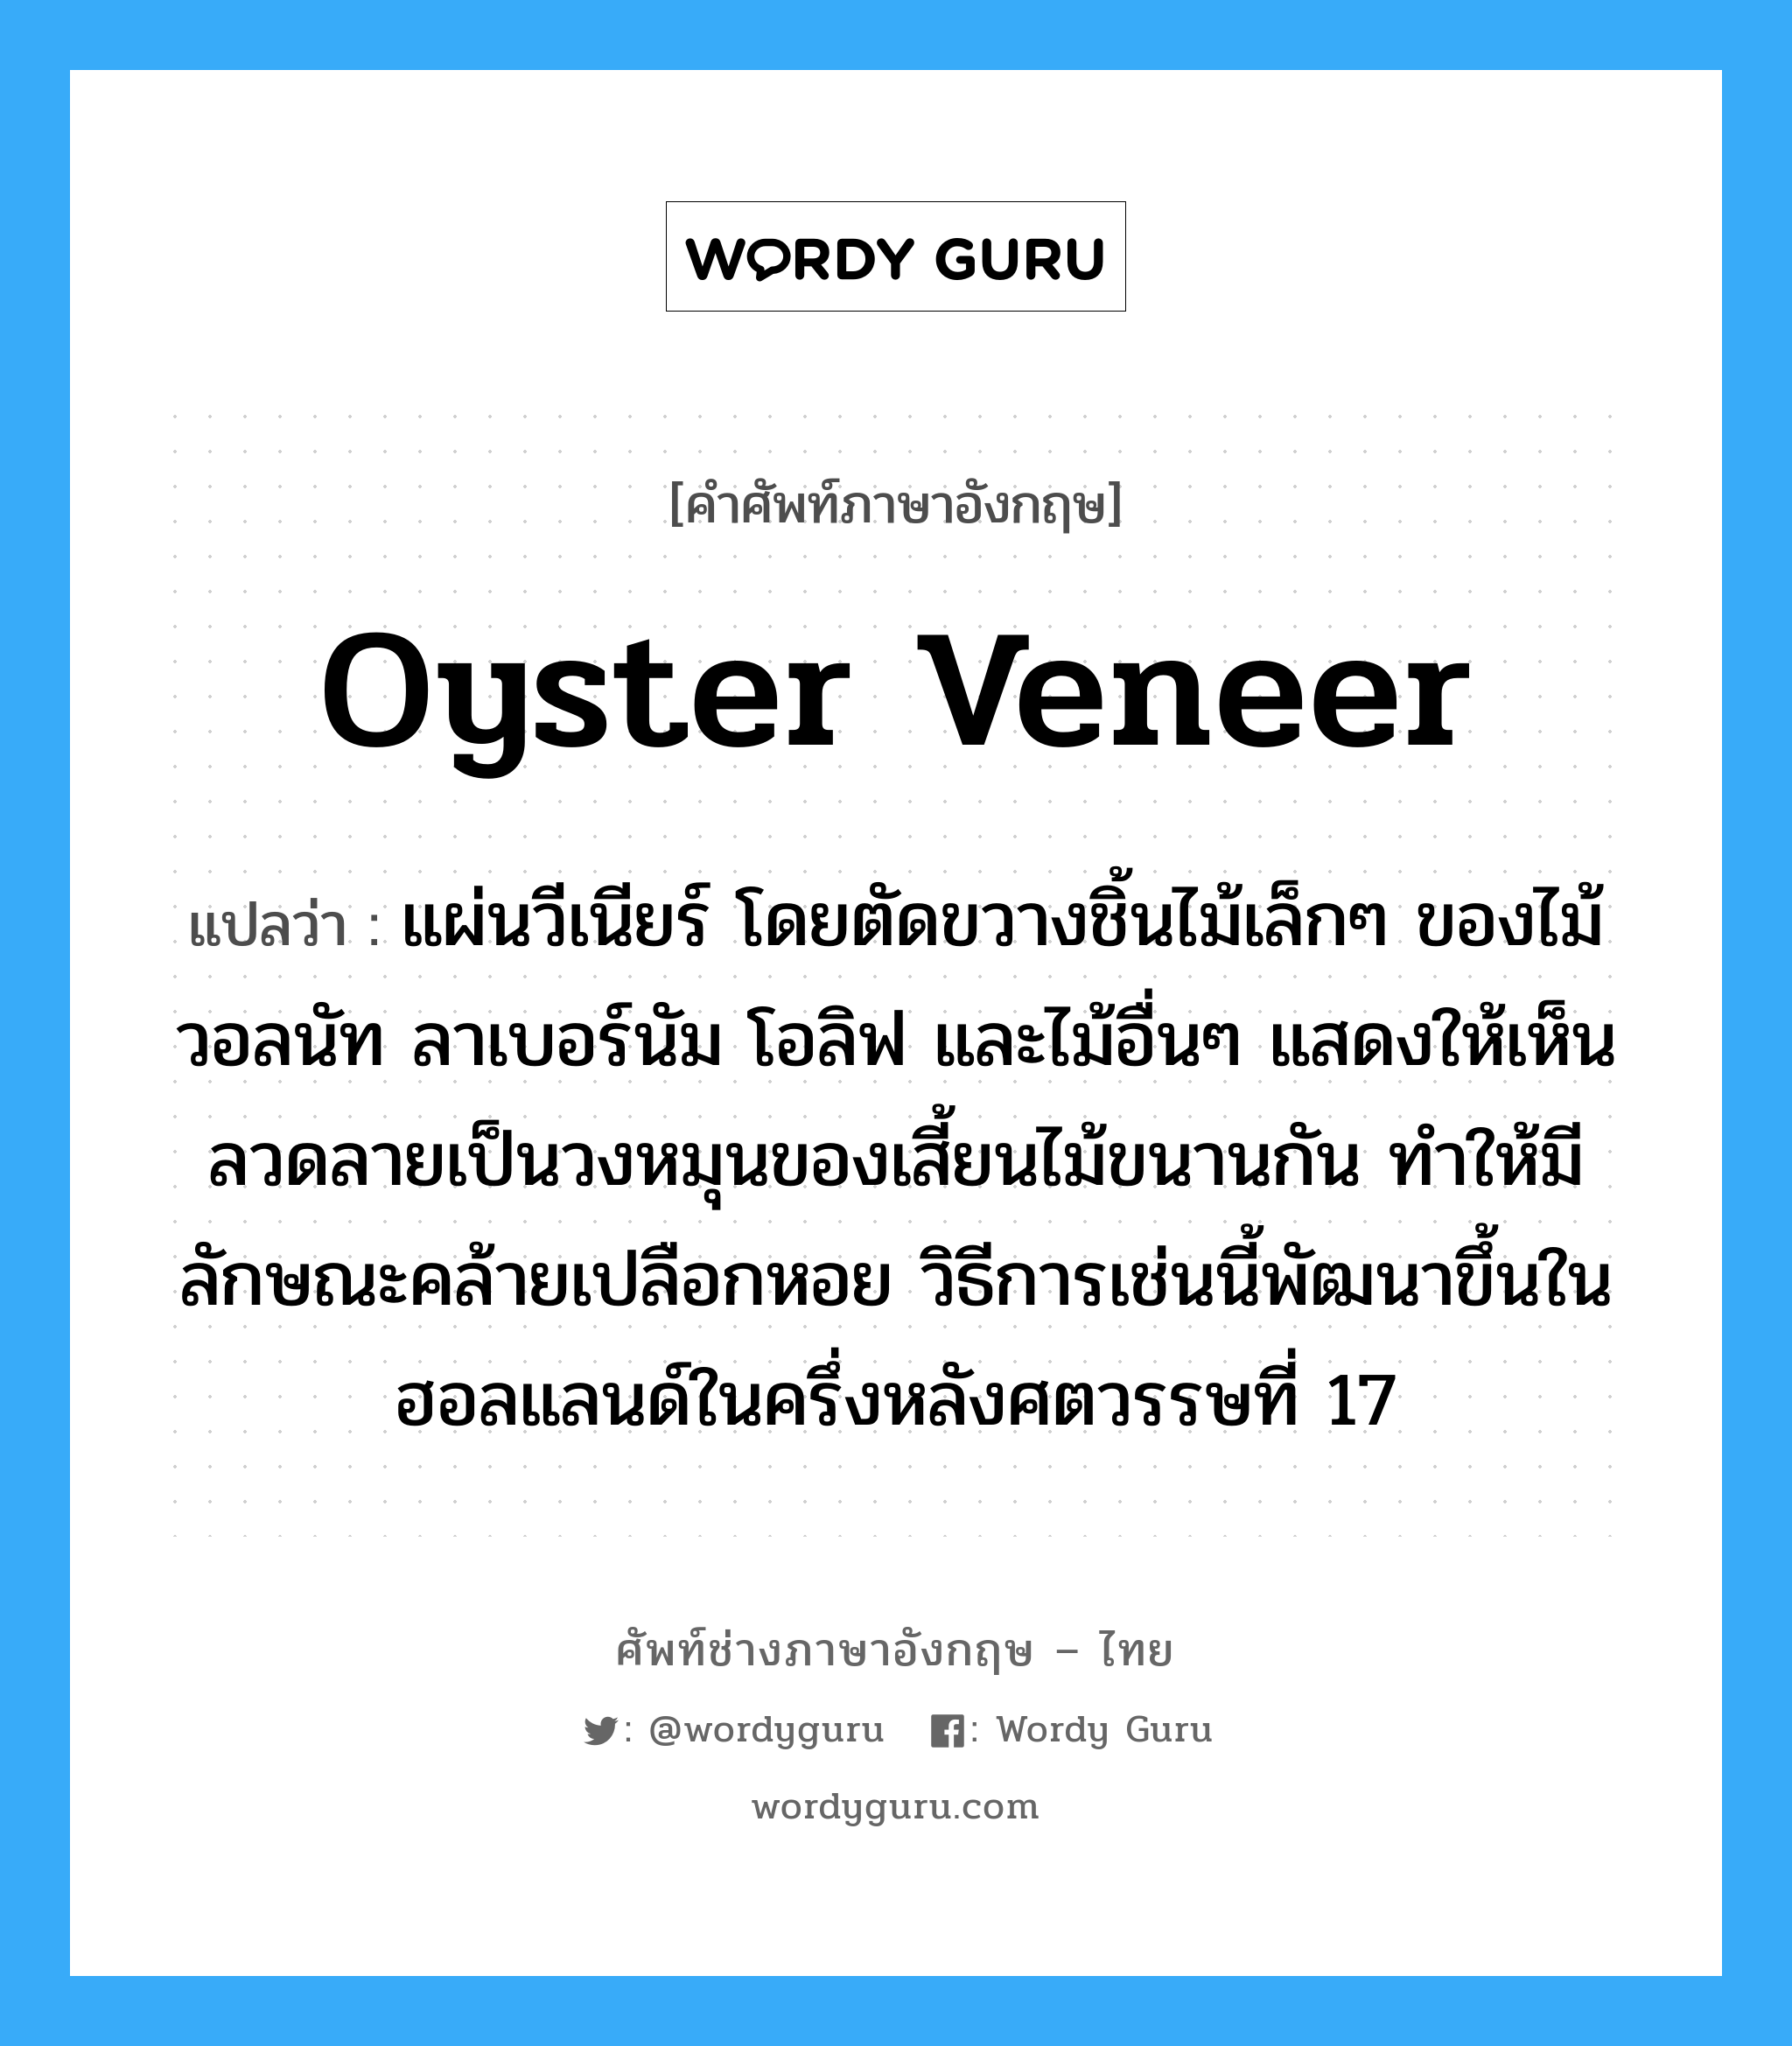 oyster veneer แปลว่า?, คำศัพท์ช่างภาษาอังกฤษ - ไทย oyster veneer คำศัพท์ภาษาอังกฤษ oyster veneer แปลว่า แผ่นวีเนียร์ โดยตัดขวางชิ้นไม้เล็กๆ ของไม้วอลนัท ลาเบอร์นัม โอลิฟ และไม้อื่นๆ แสดงให้เห็นลวดลายเป็นวงหมุนของเสี้ยนไม้ขนานกัน ทำให้มีลักษณะคล้ายเปลือกหอย วิธีการเช่นนี้พัฒนาขึ้นในฮอลแลนด์ในครึ่งหลังศตวรรษที่ 17